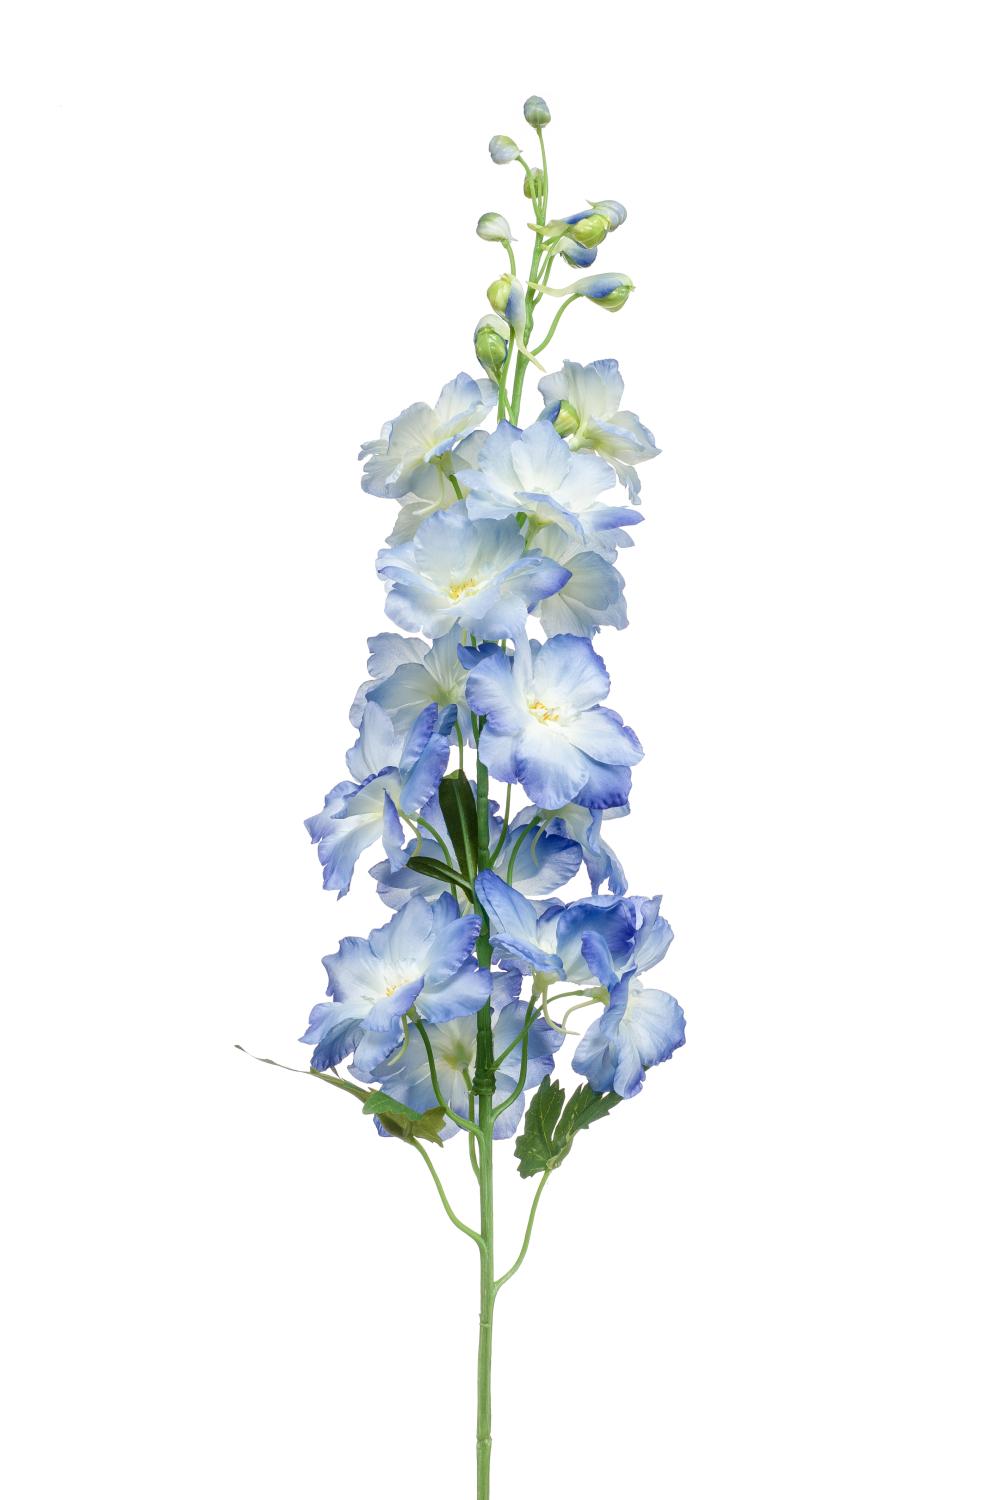 Silk Delphinium SETSUKO, light blue, 3ft/95 cm